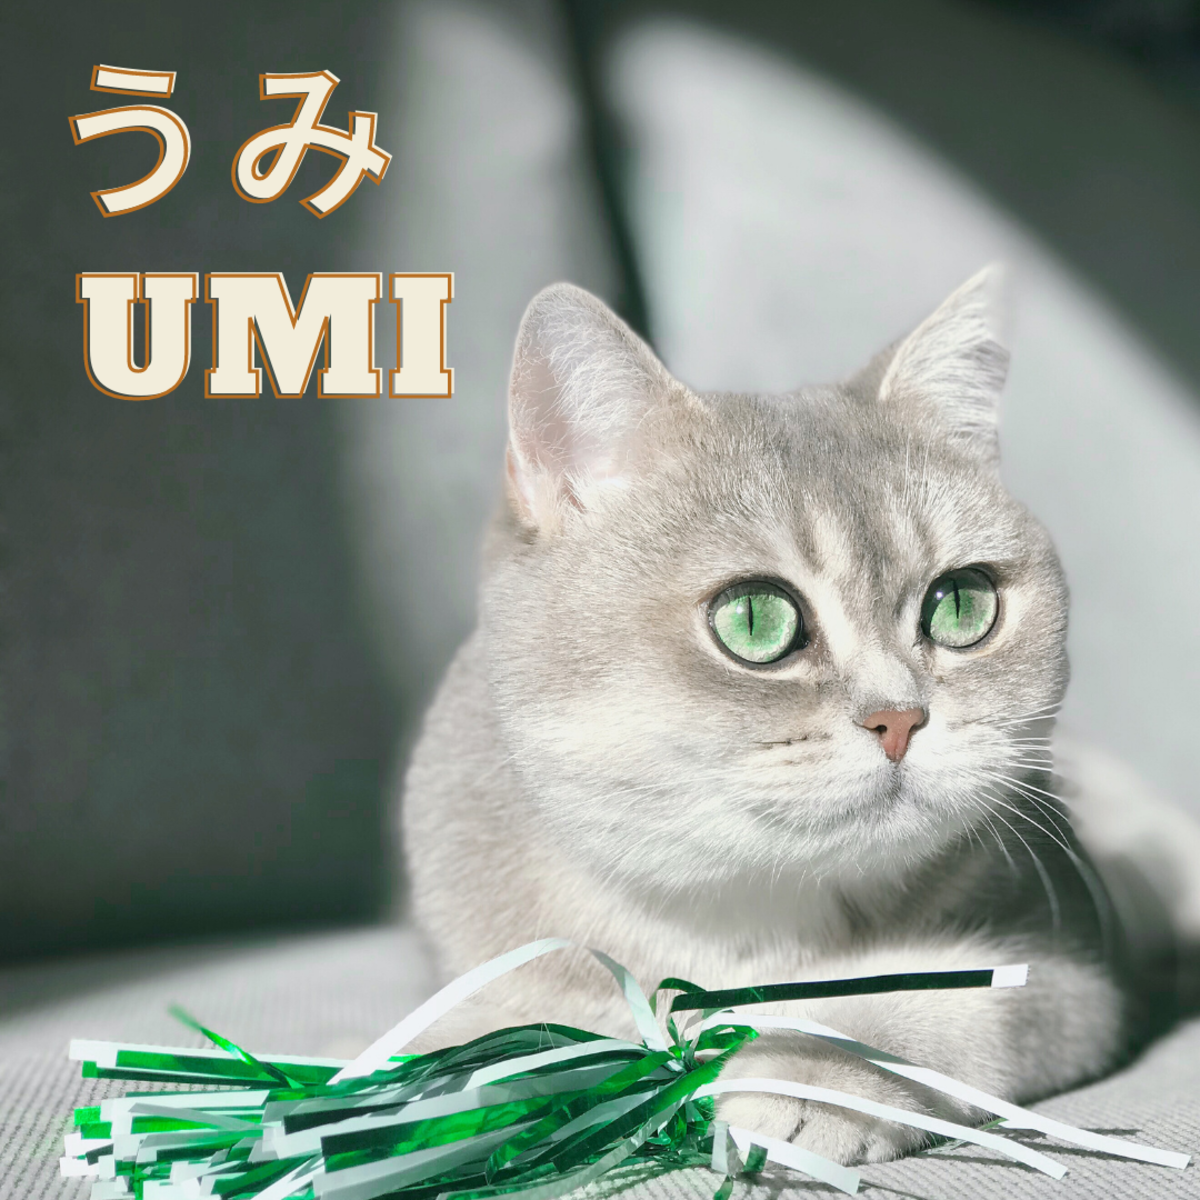 Umi or Sea